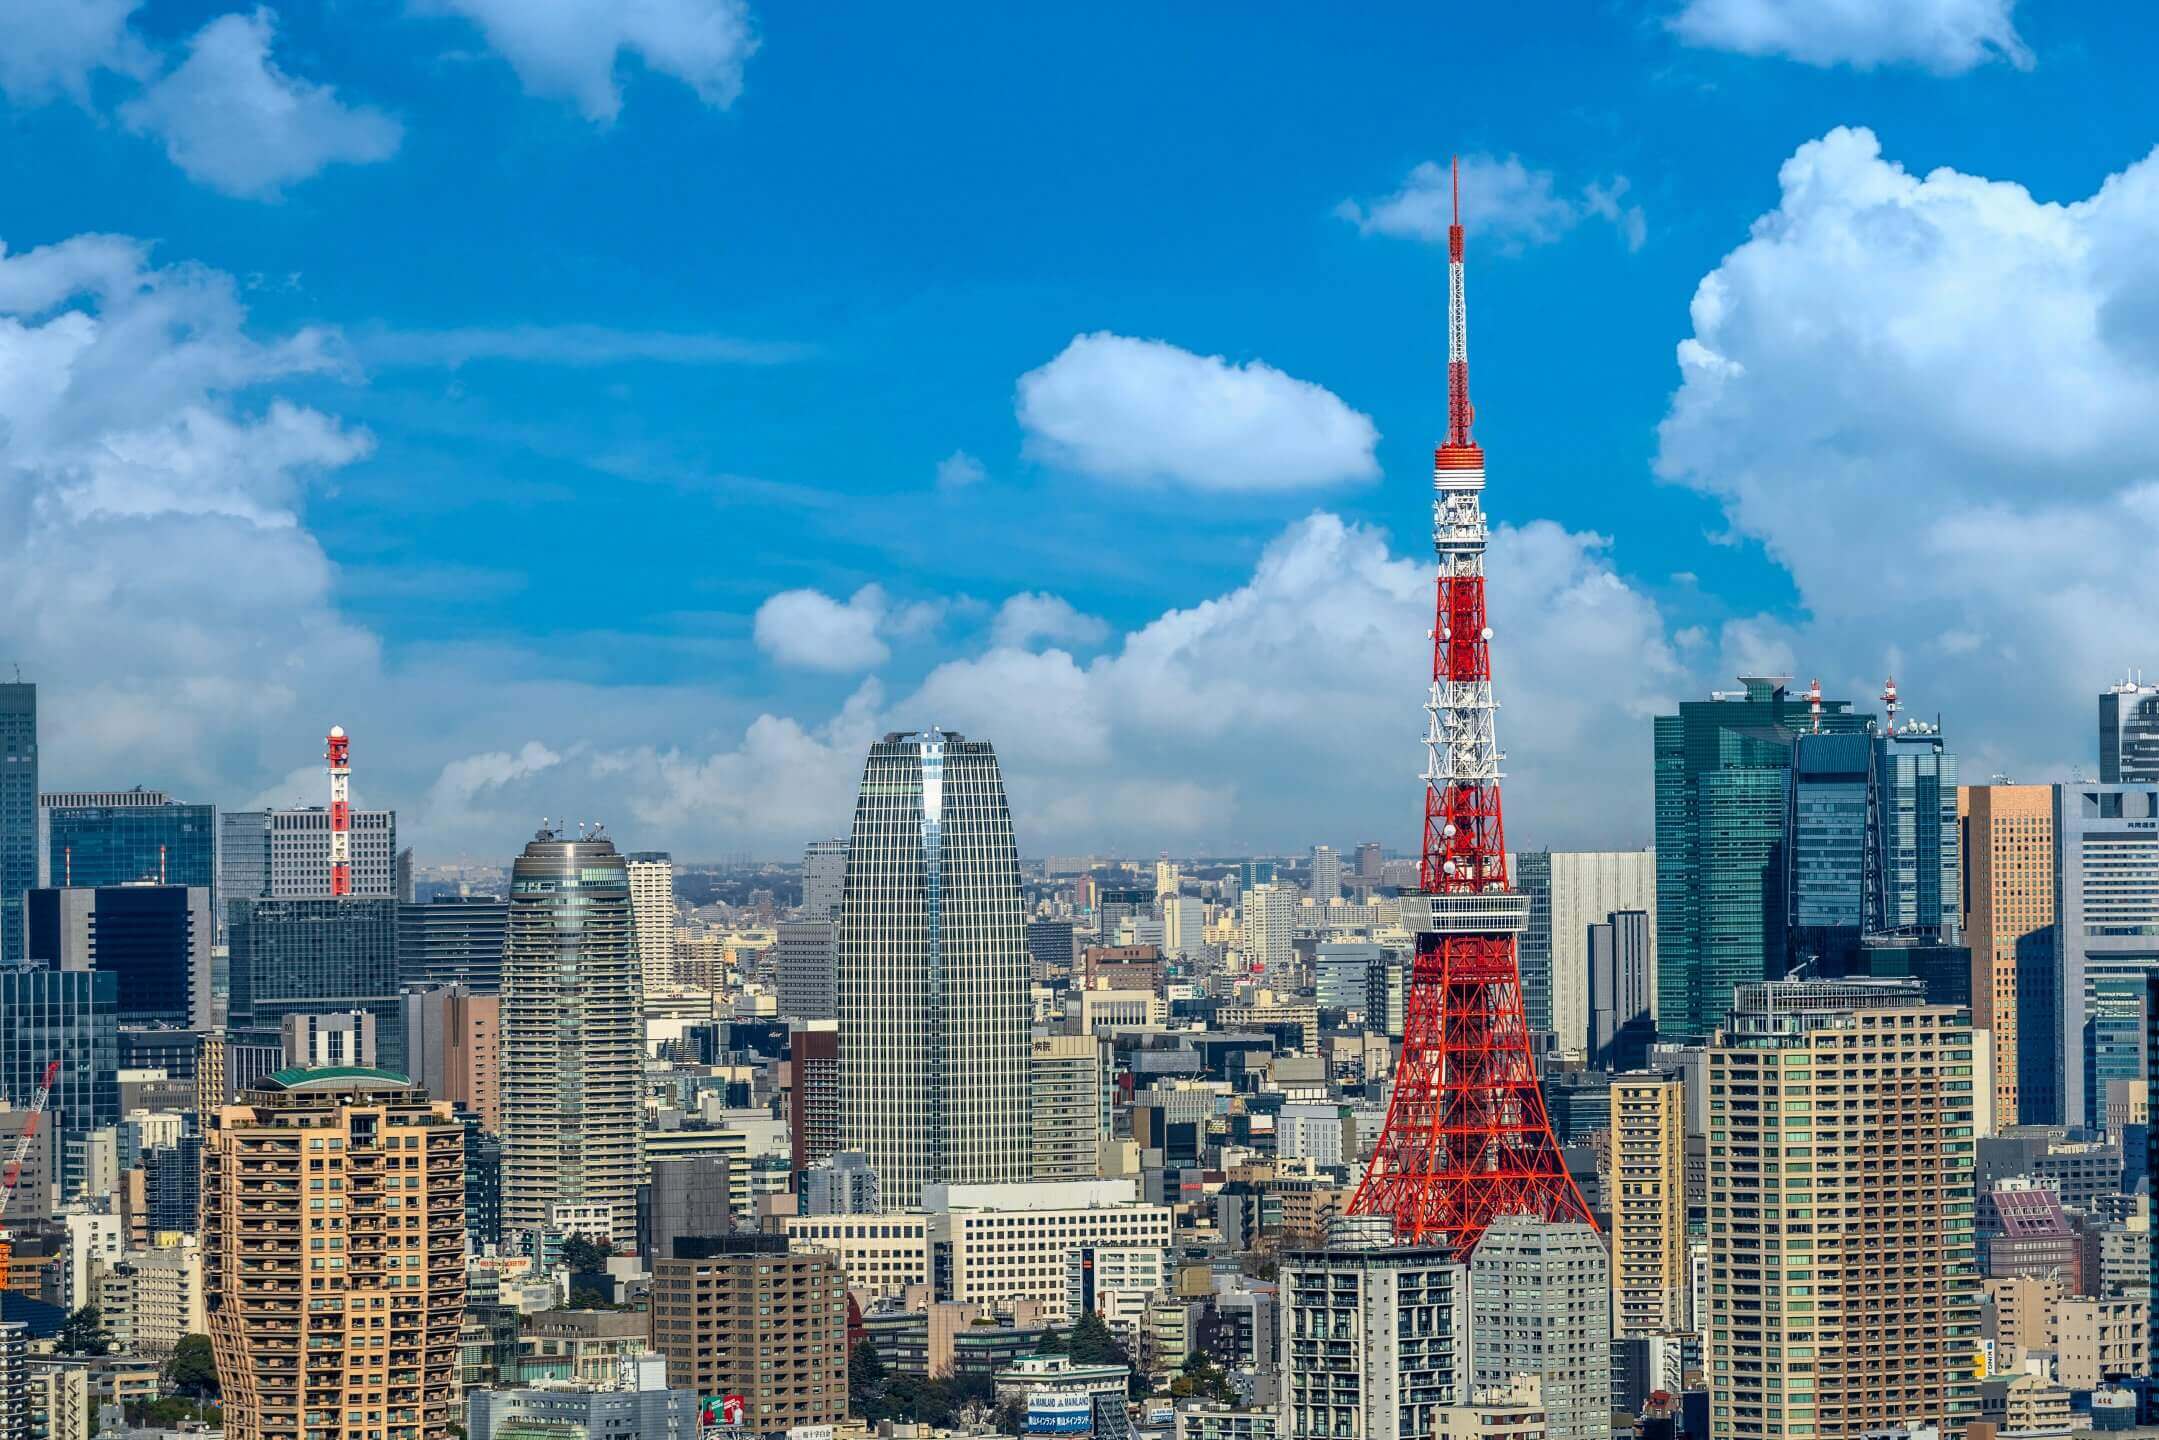 日本國內雖因企業提供租屋補貼、單身世代等原因減少購屋誘因，導致房屋自有率的低迷，但同時也代表日本國內存在熱絡的租屋市場。